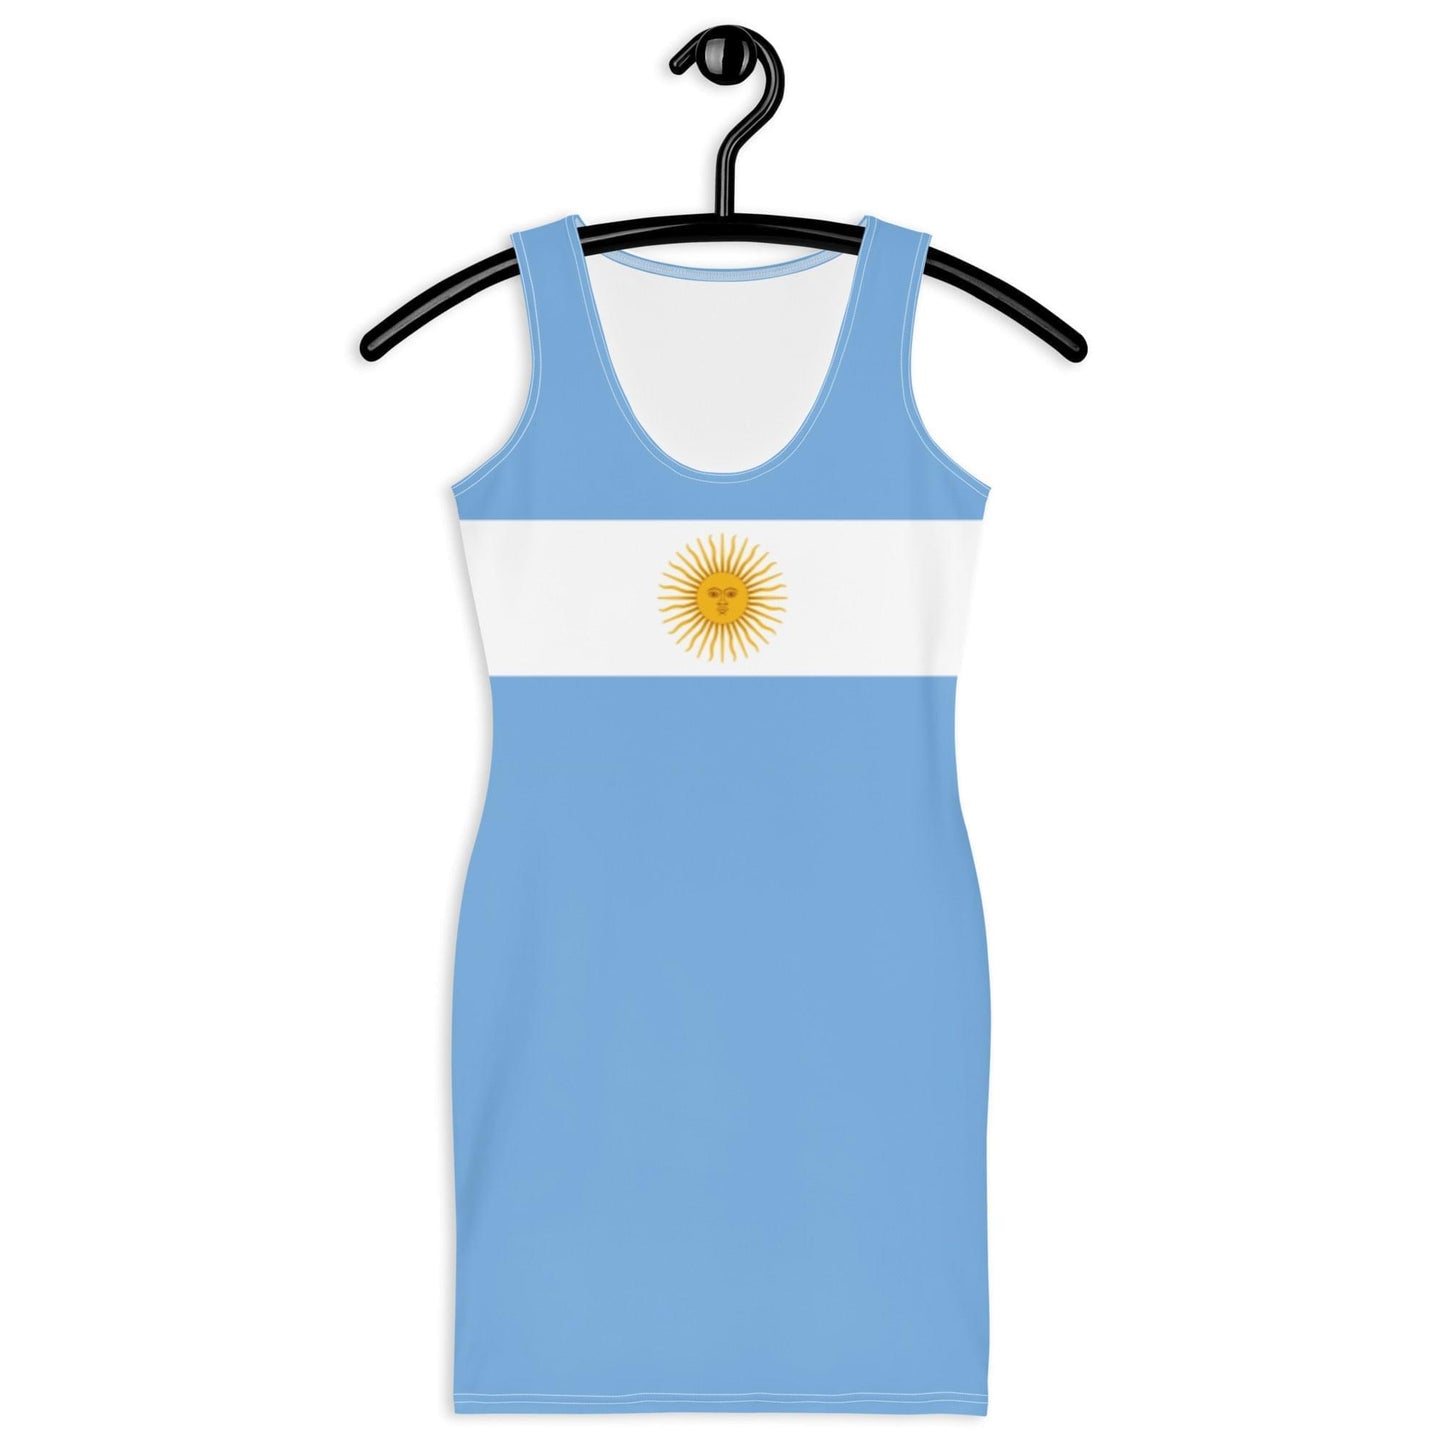 Abito Argentina con colori della bandiera Argentina / Abito azzurro